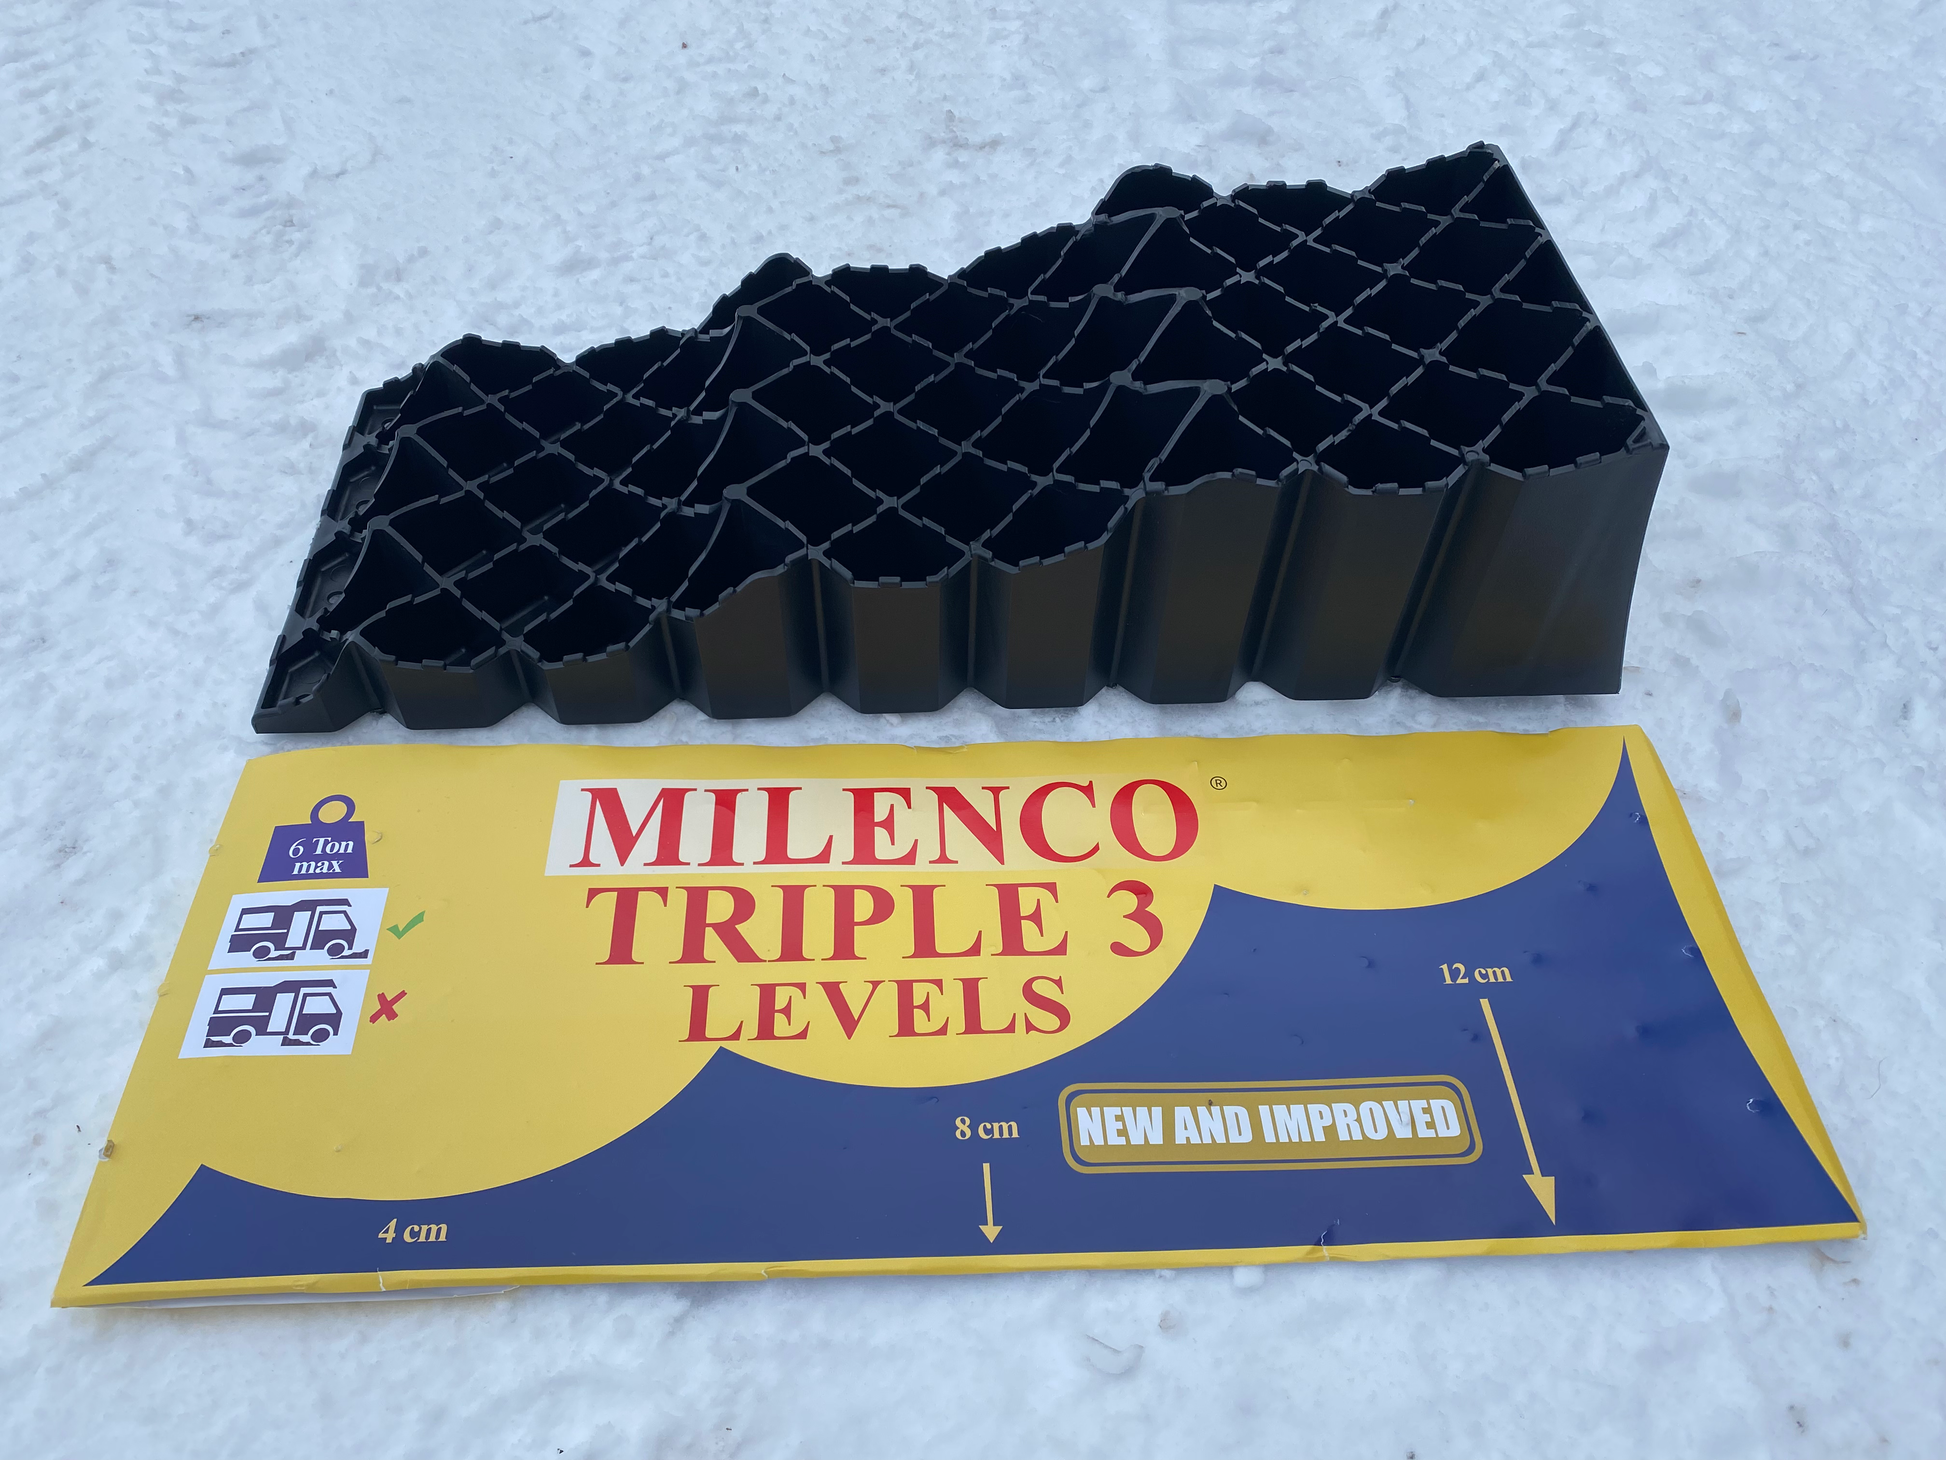 Milenco Triple 3 hjulramp